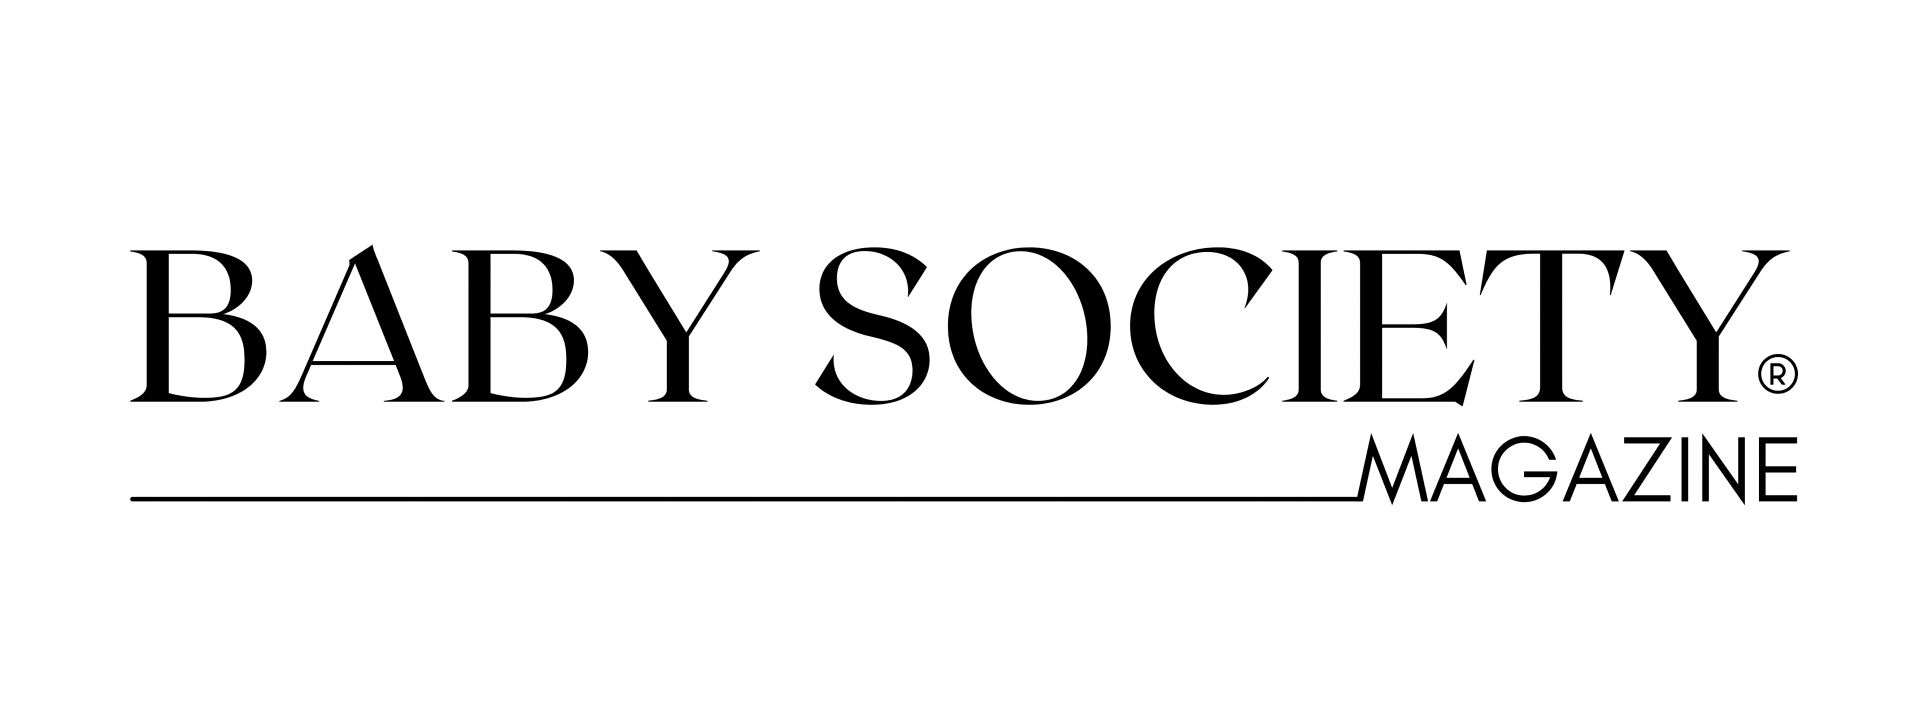 Baby Society Magazine